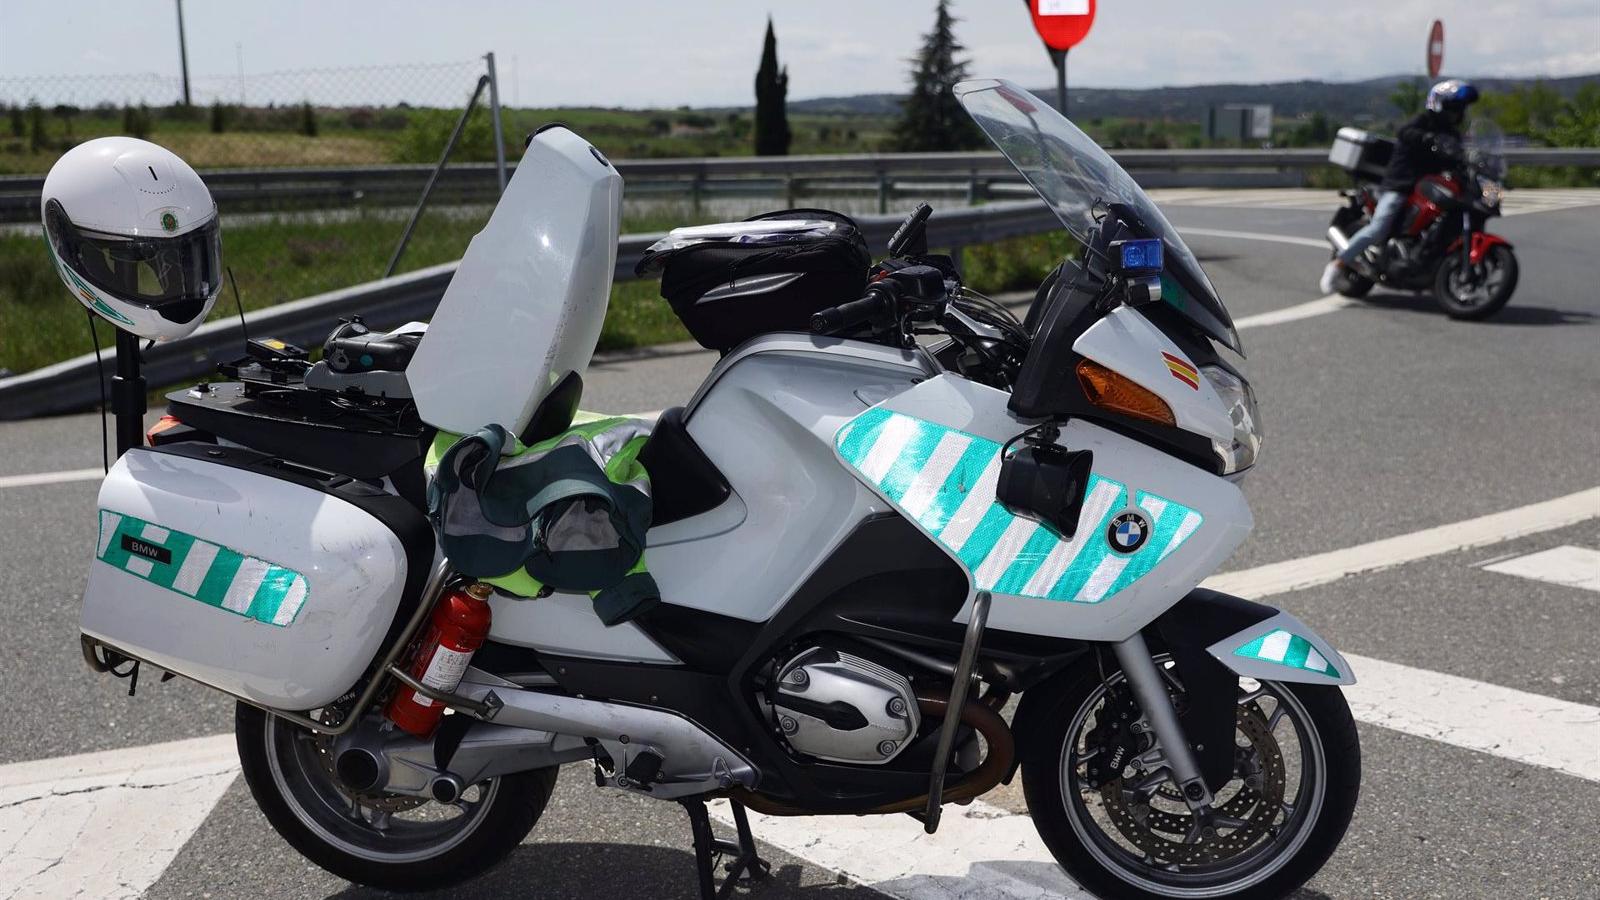 La DGT pone en marcha una nueva campaña de vigilancia de motocicletas durante el fin de semana